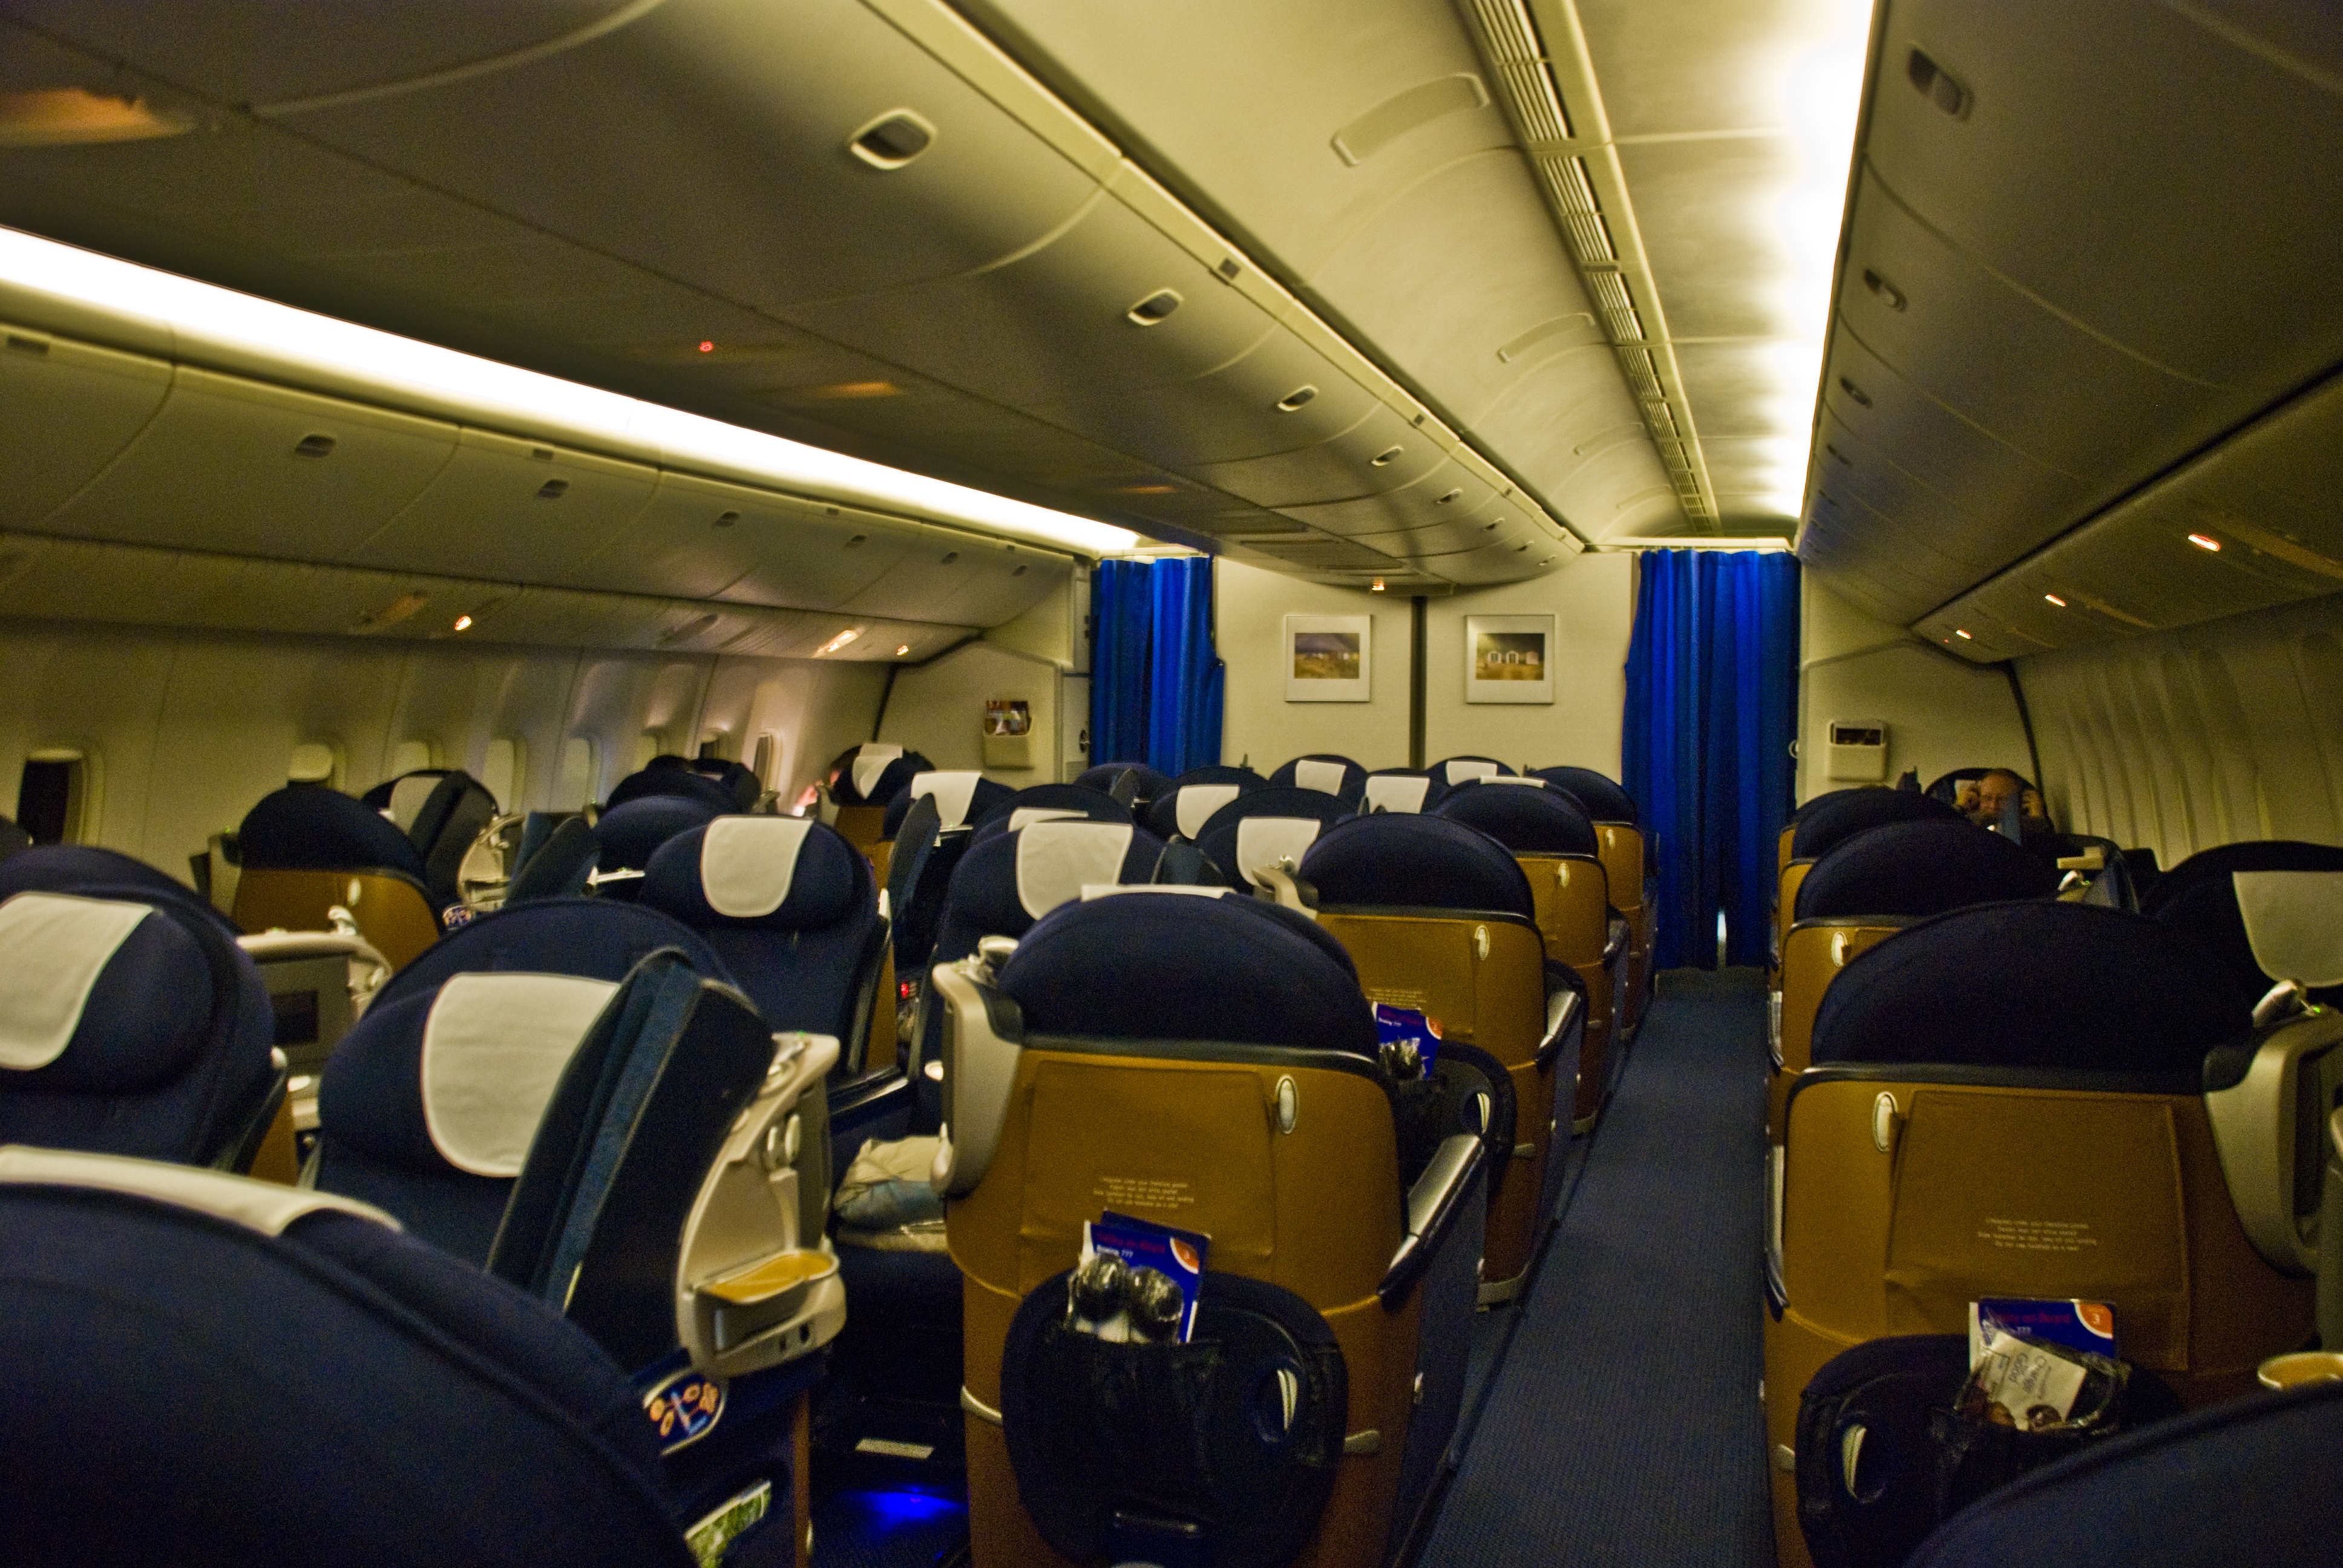 British Airways 777 Club World cabin